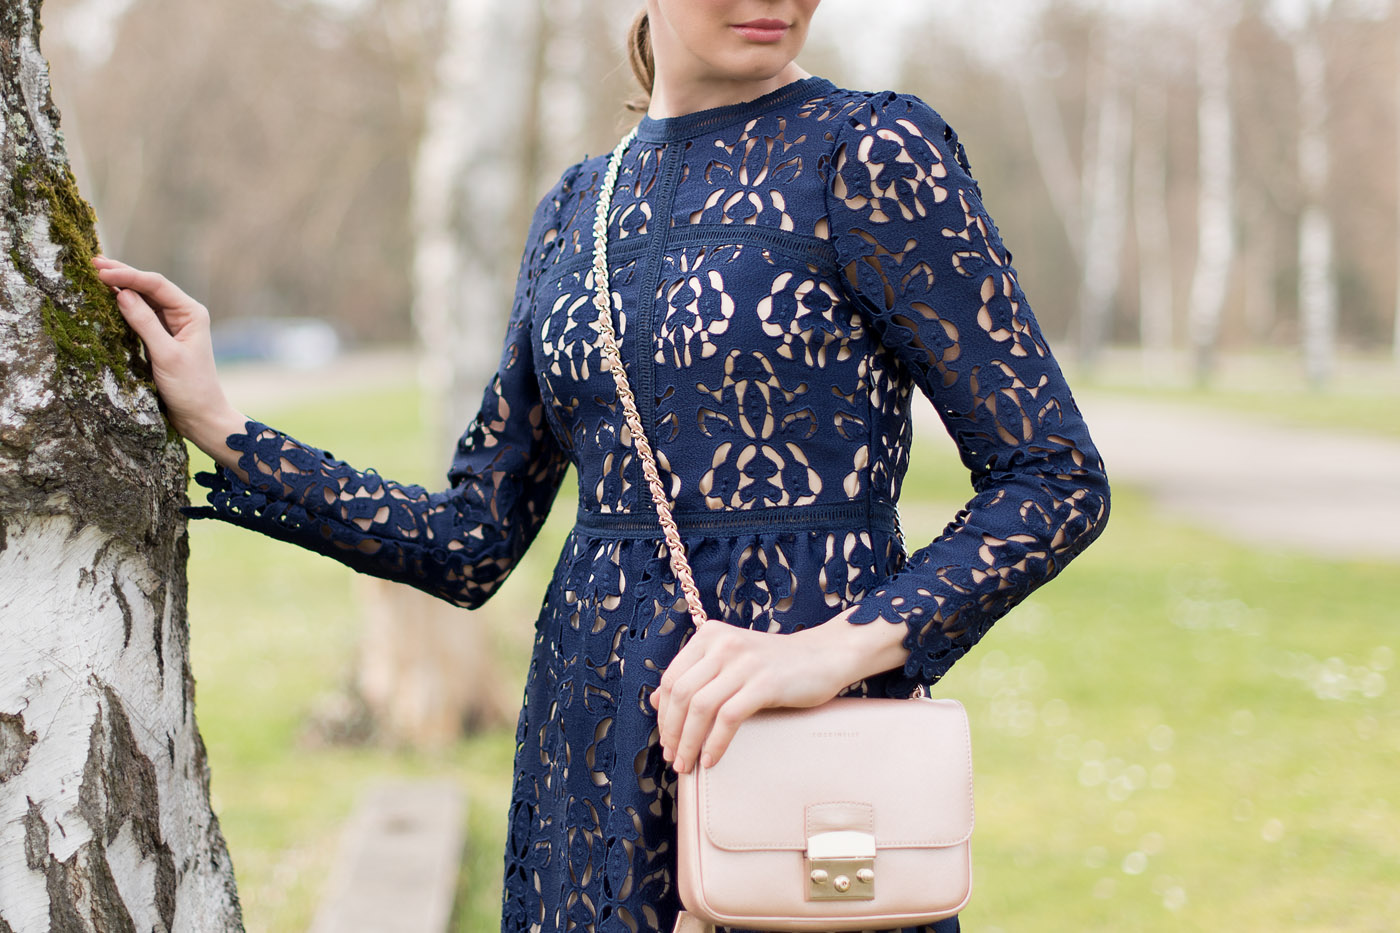 Zara-Lace-Dress-michaelkors-Coccinelle-fashionblog-8